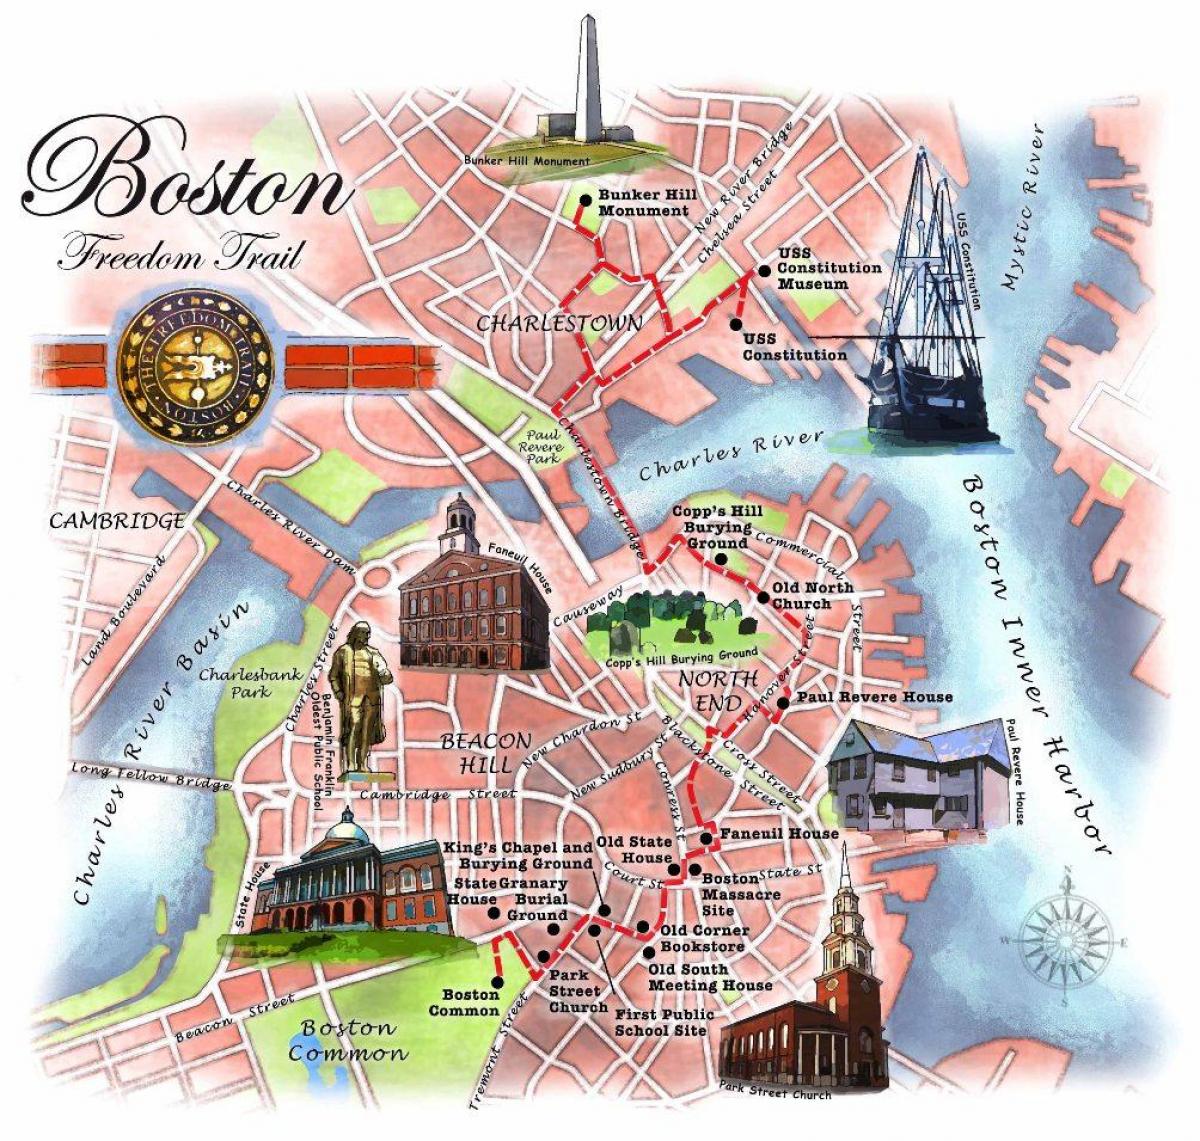 નકશો બોસ્ટન ફ્રીડમ ટ્રેઇલ